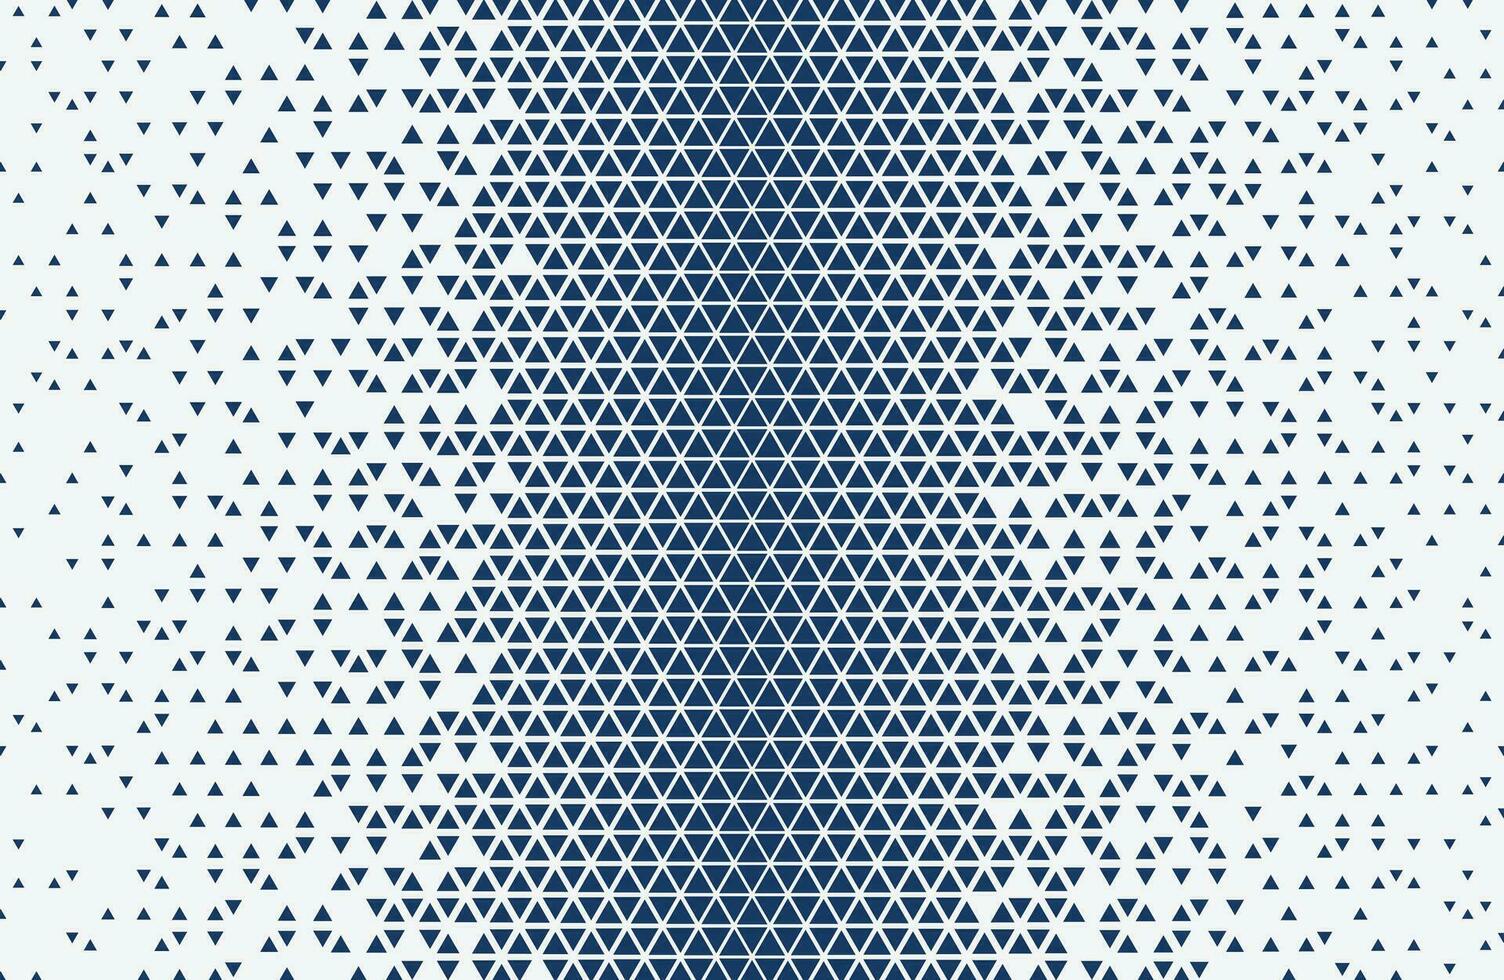 blauw en wit halftoon driehoekspatroon vector